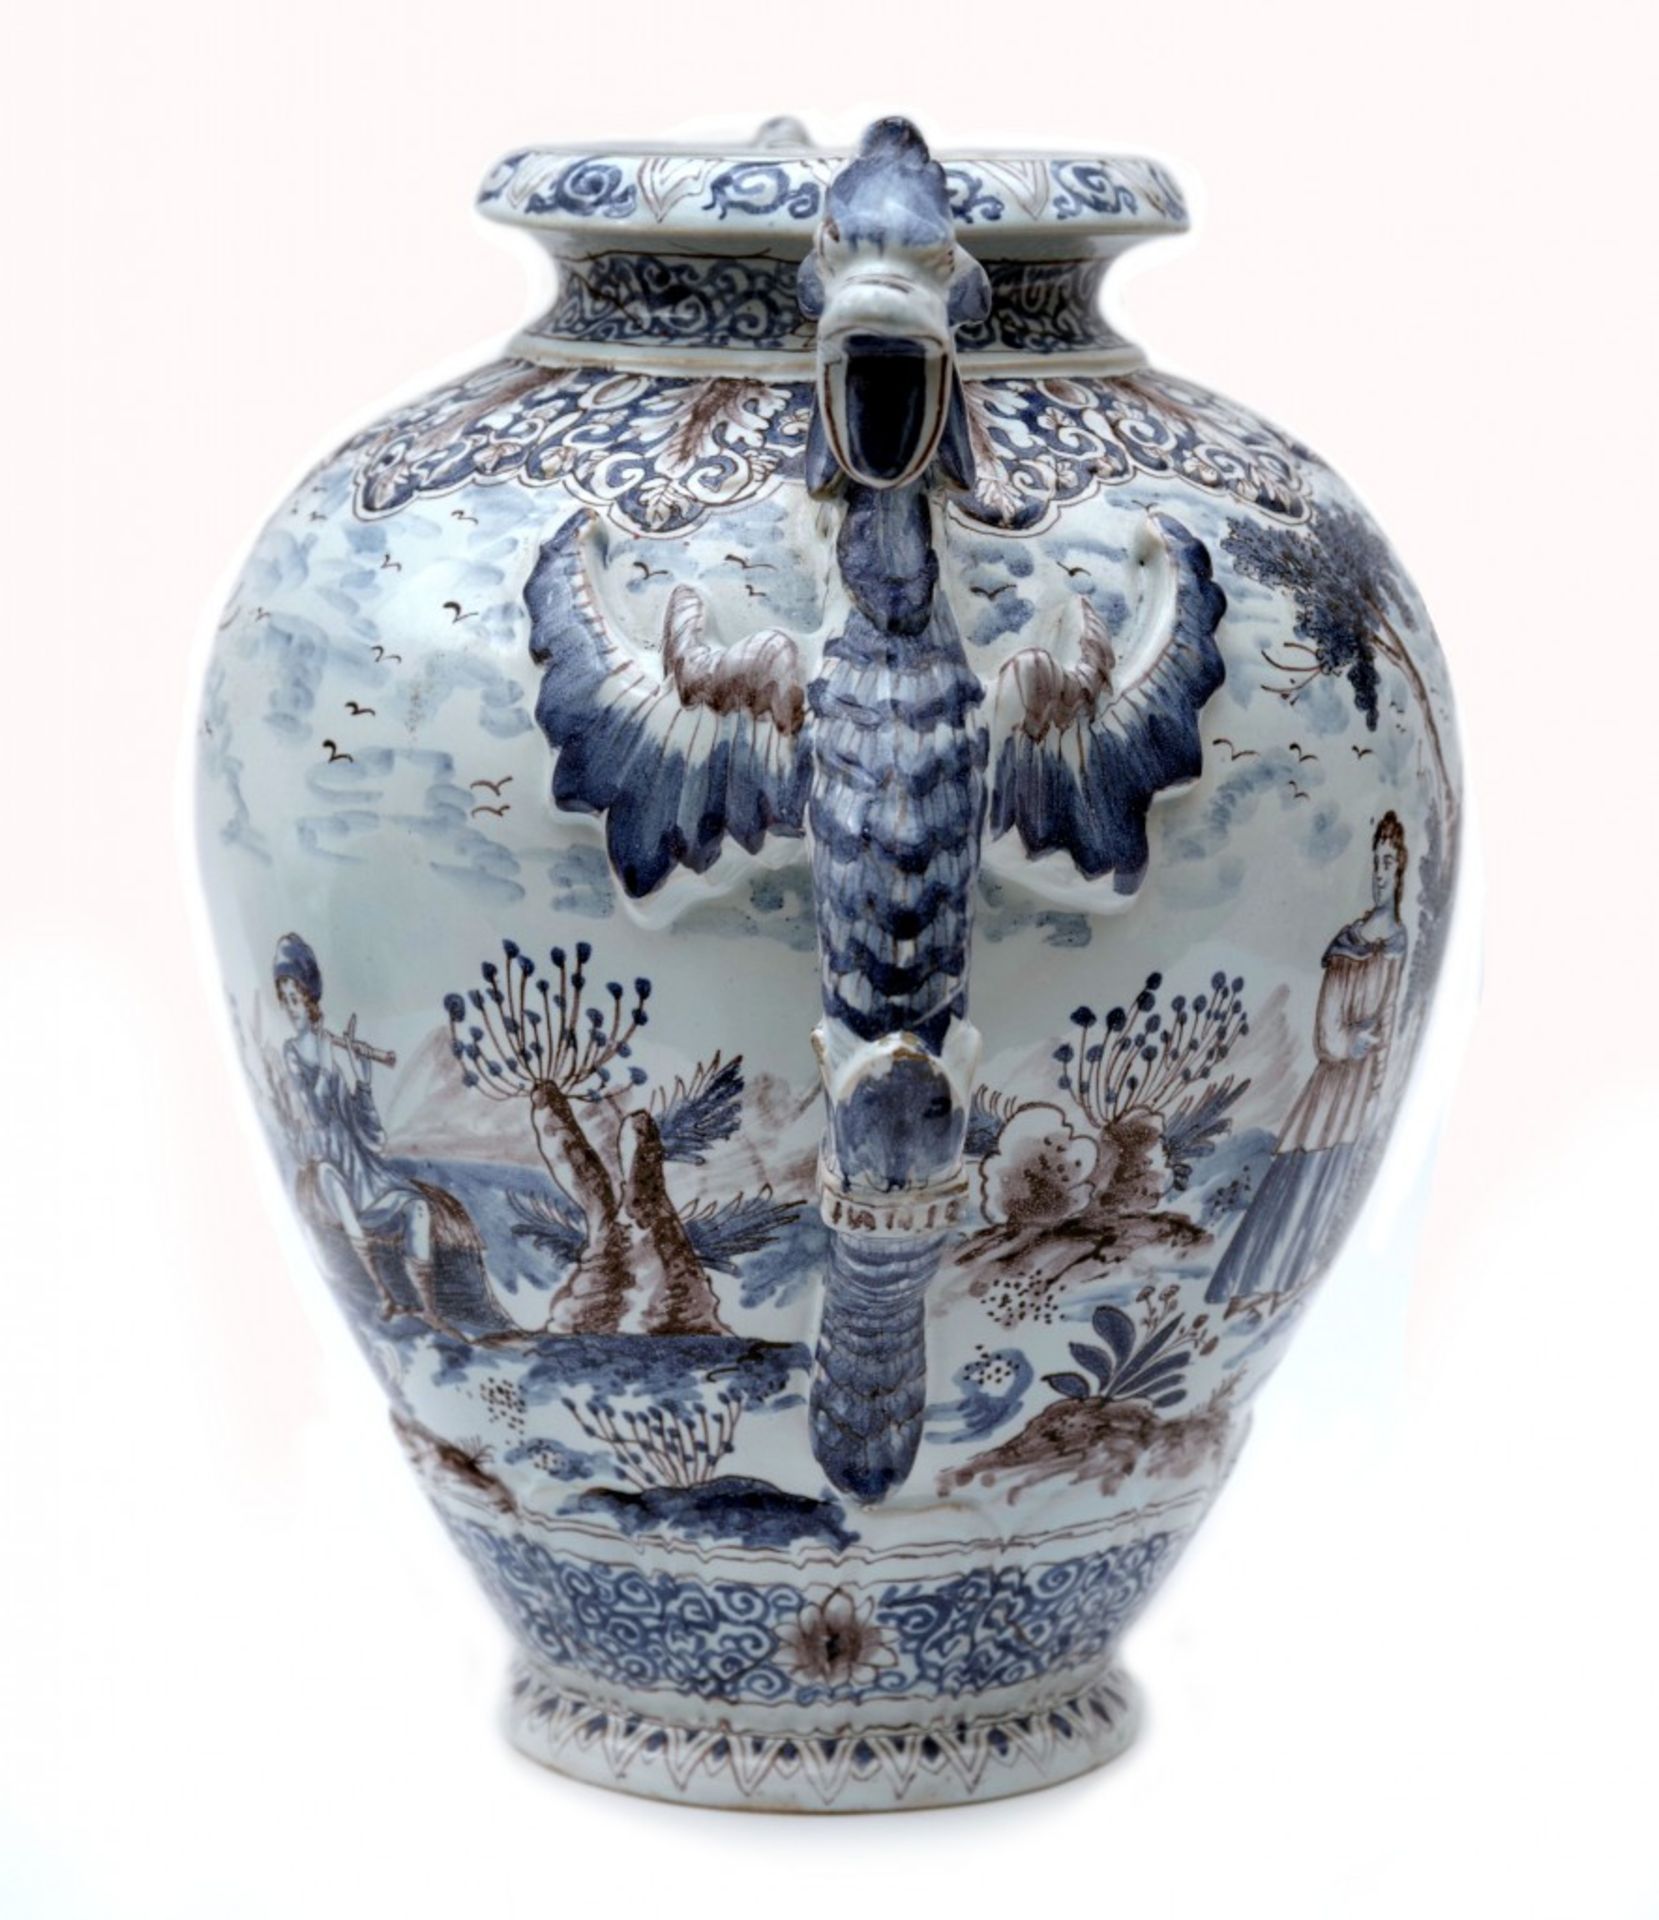 Fayence-Vase im Stil der Manufaktur in Nevers - Image 3 of 4